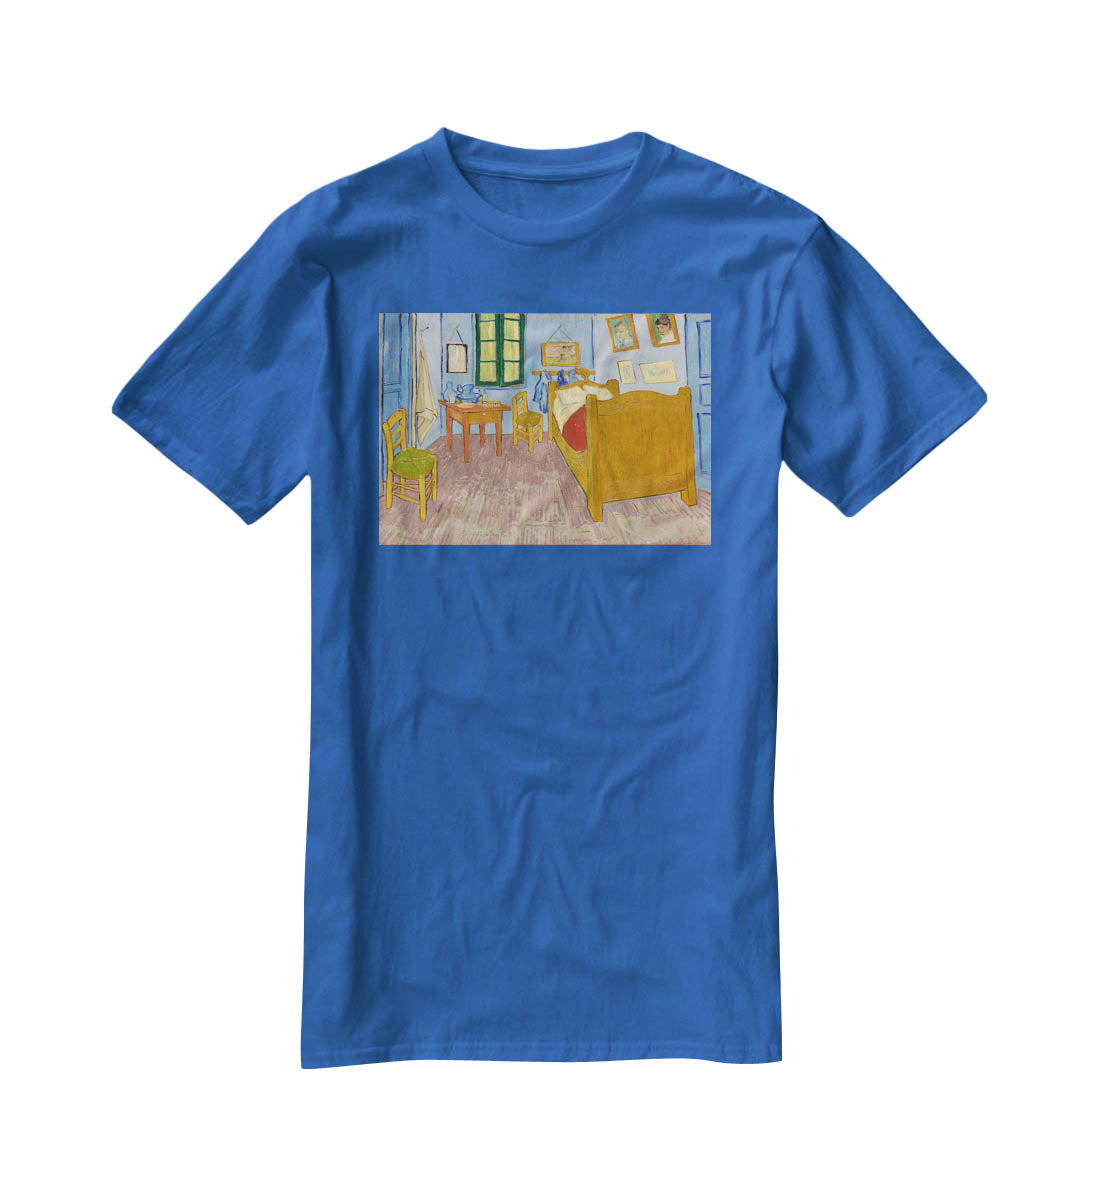 Vincents bedroom at Arles T-Shirt - Canvas Art Rocks - 2